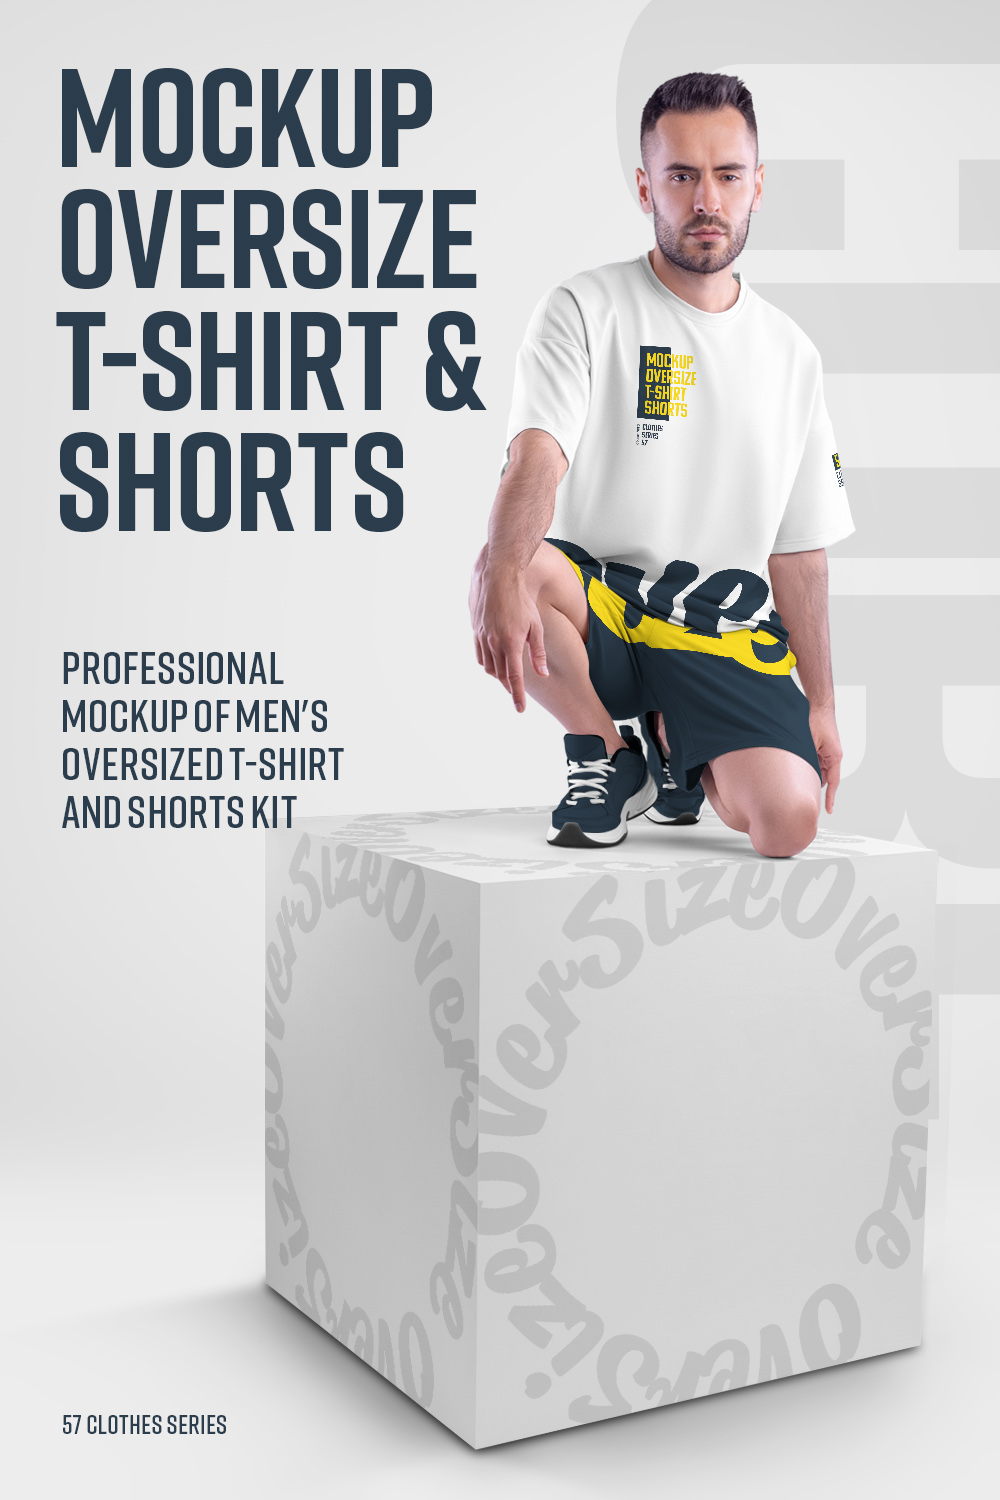 10 Mockups Oversize T-shirt and Shorts Kit on the Cube pinterest image.